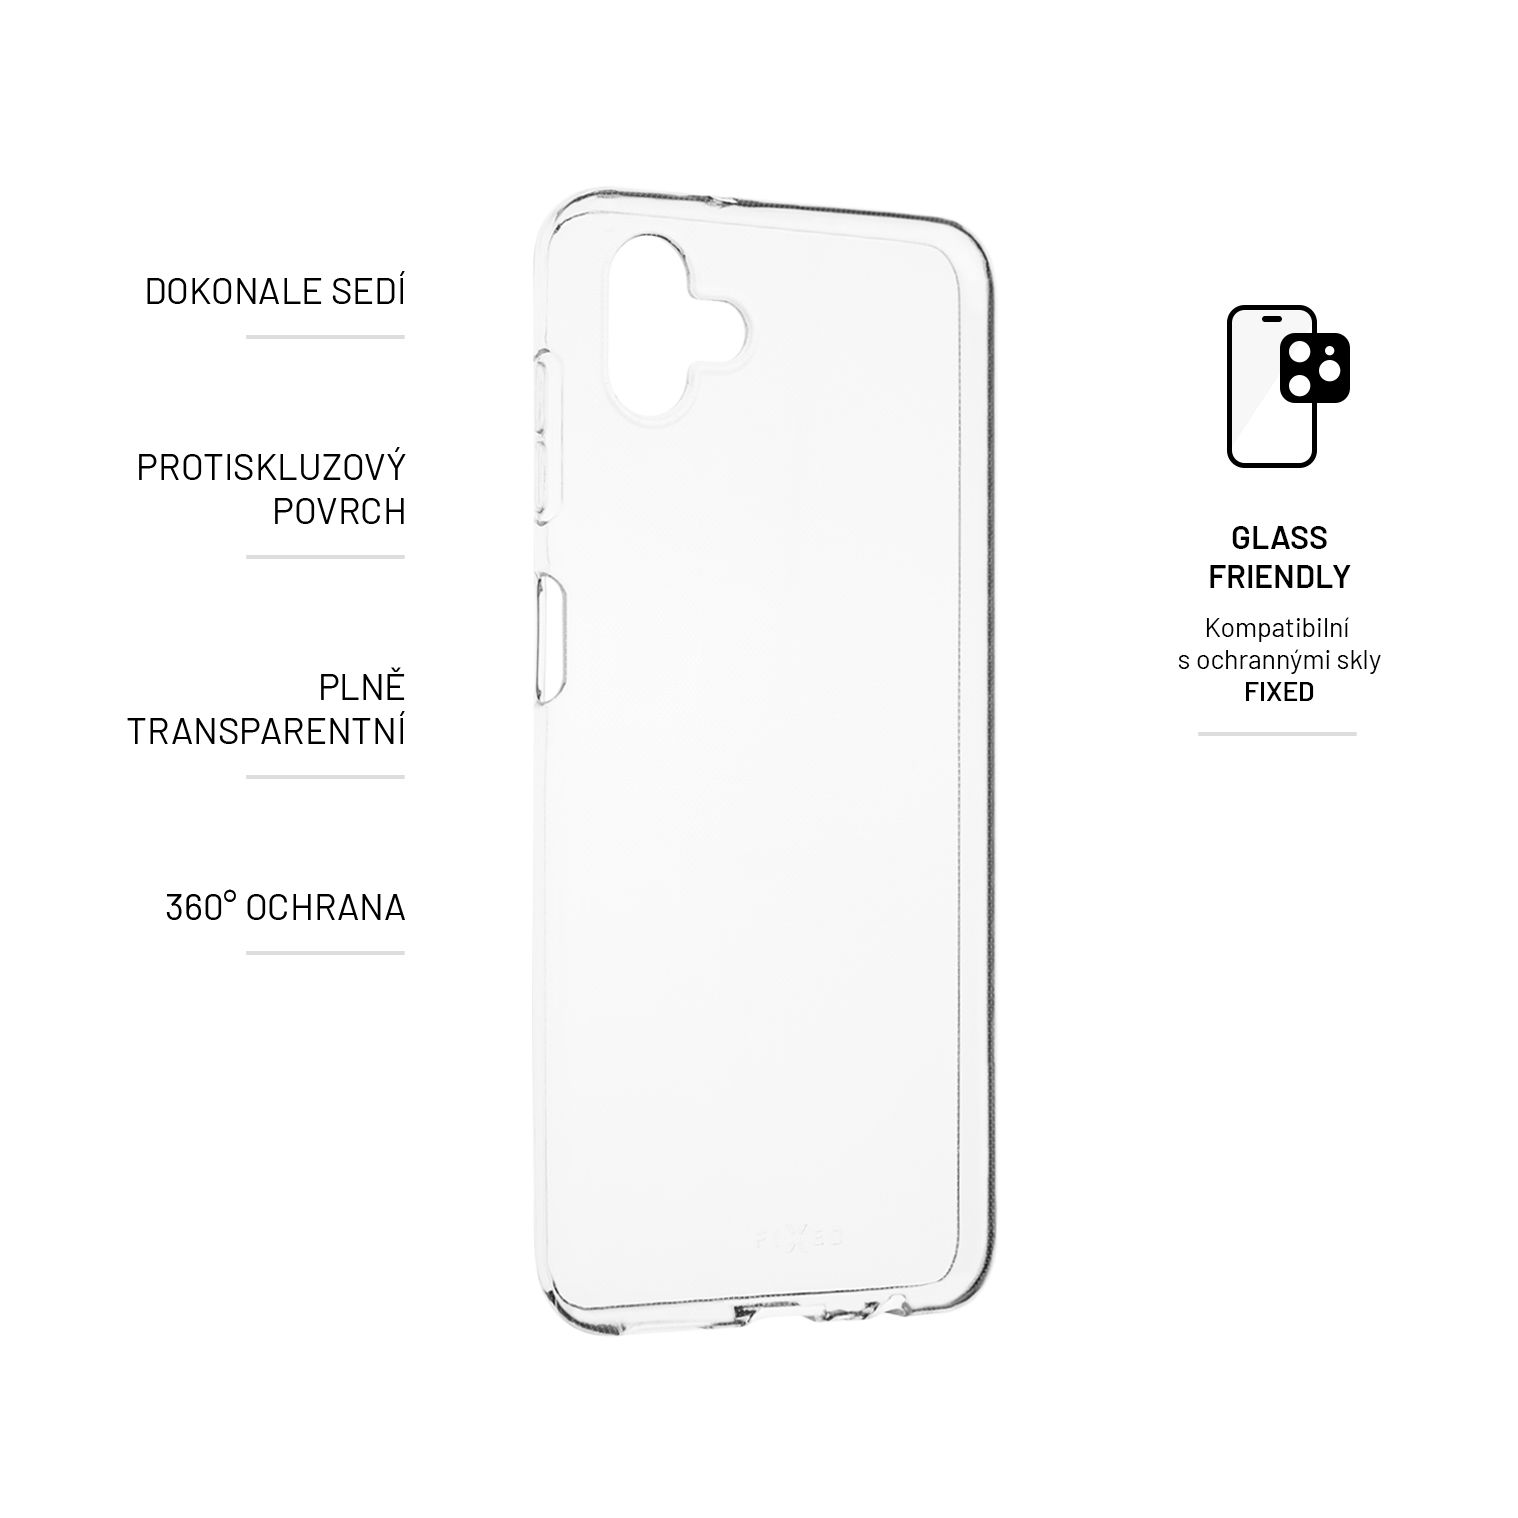 5G, M13 FIXTCC-977, Galaxy Transparent Samsung, Full Cover, FIXED